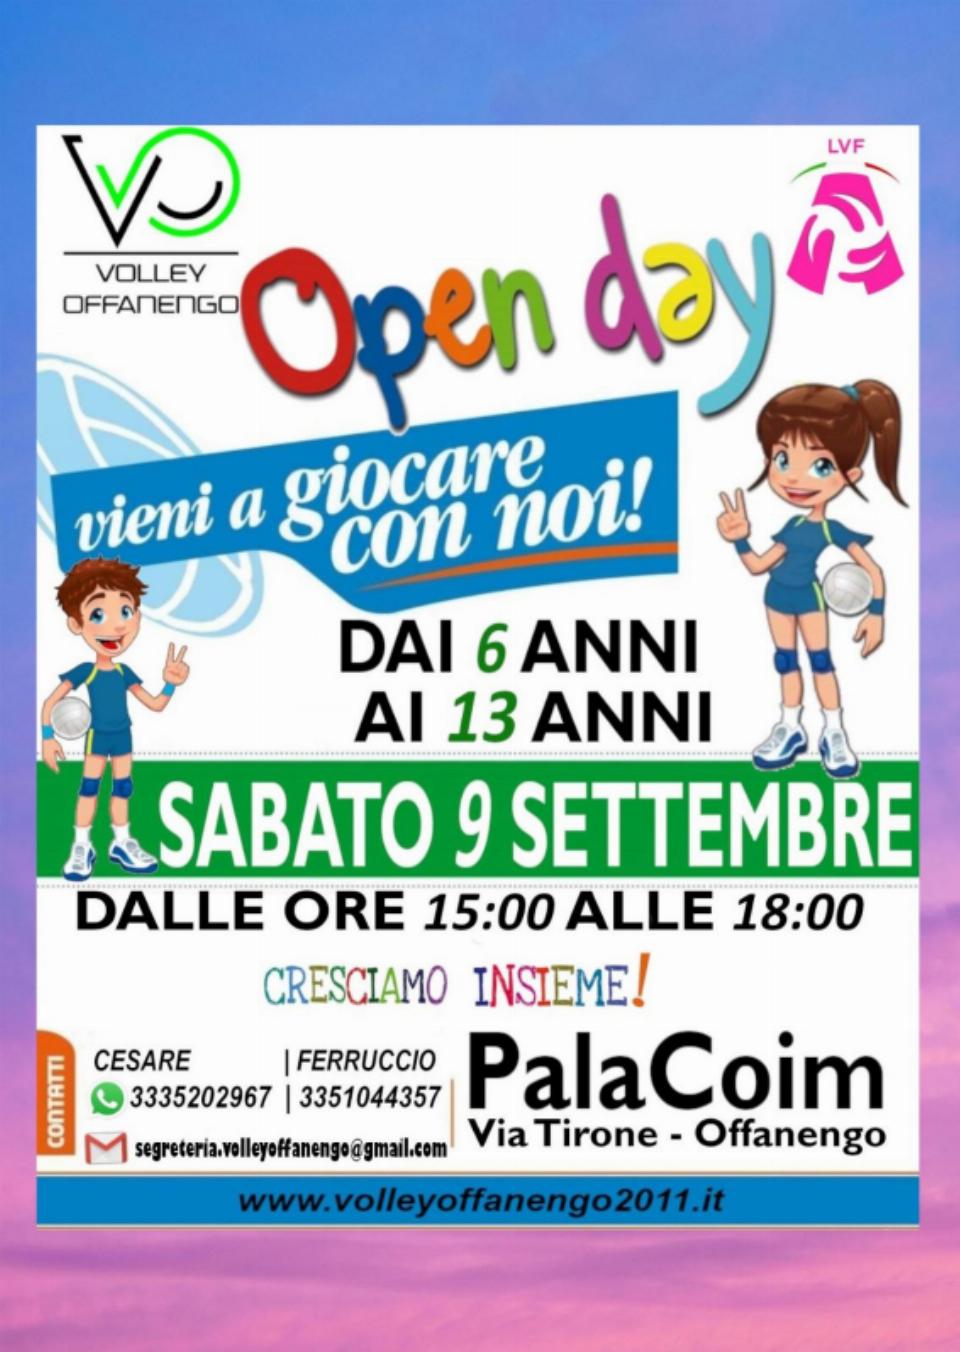 Il 9 settembre l'Open day del Volley Offanengo